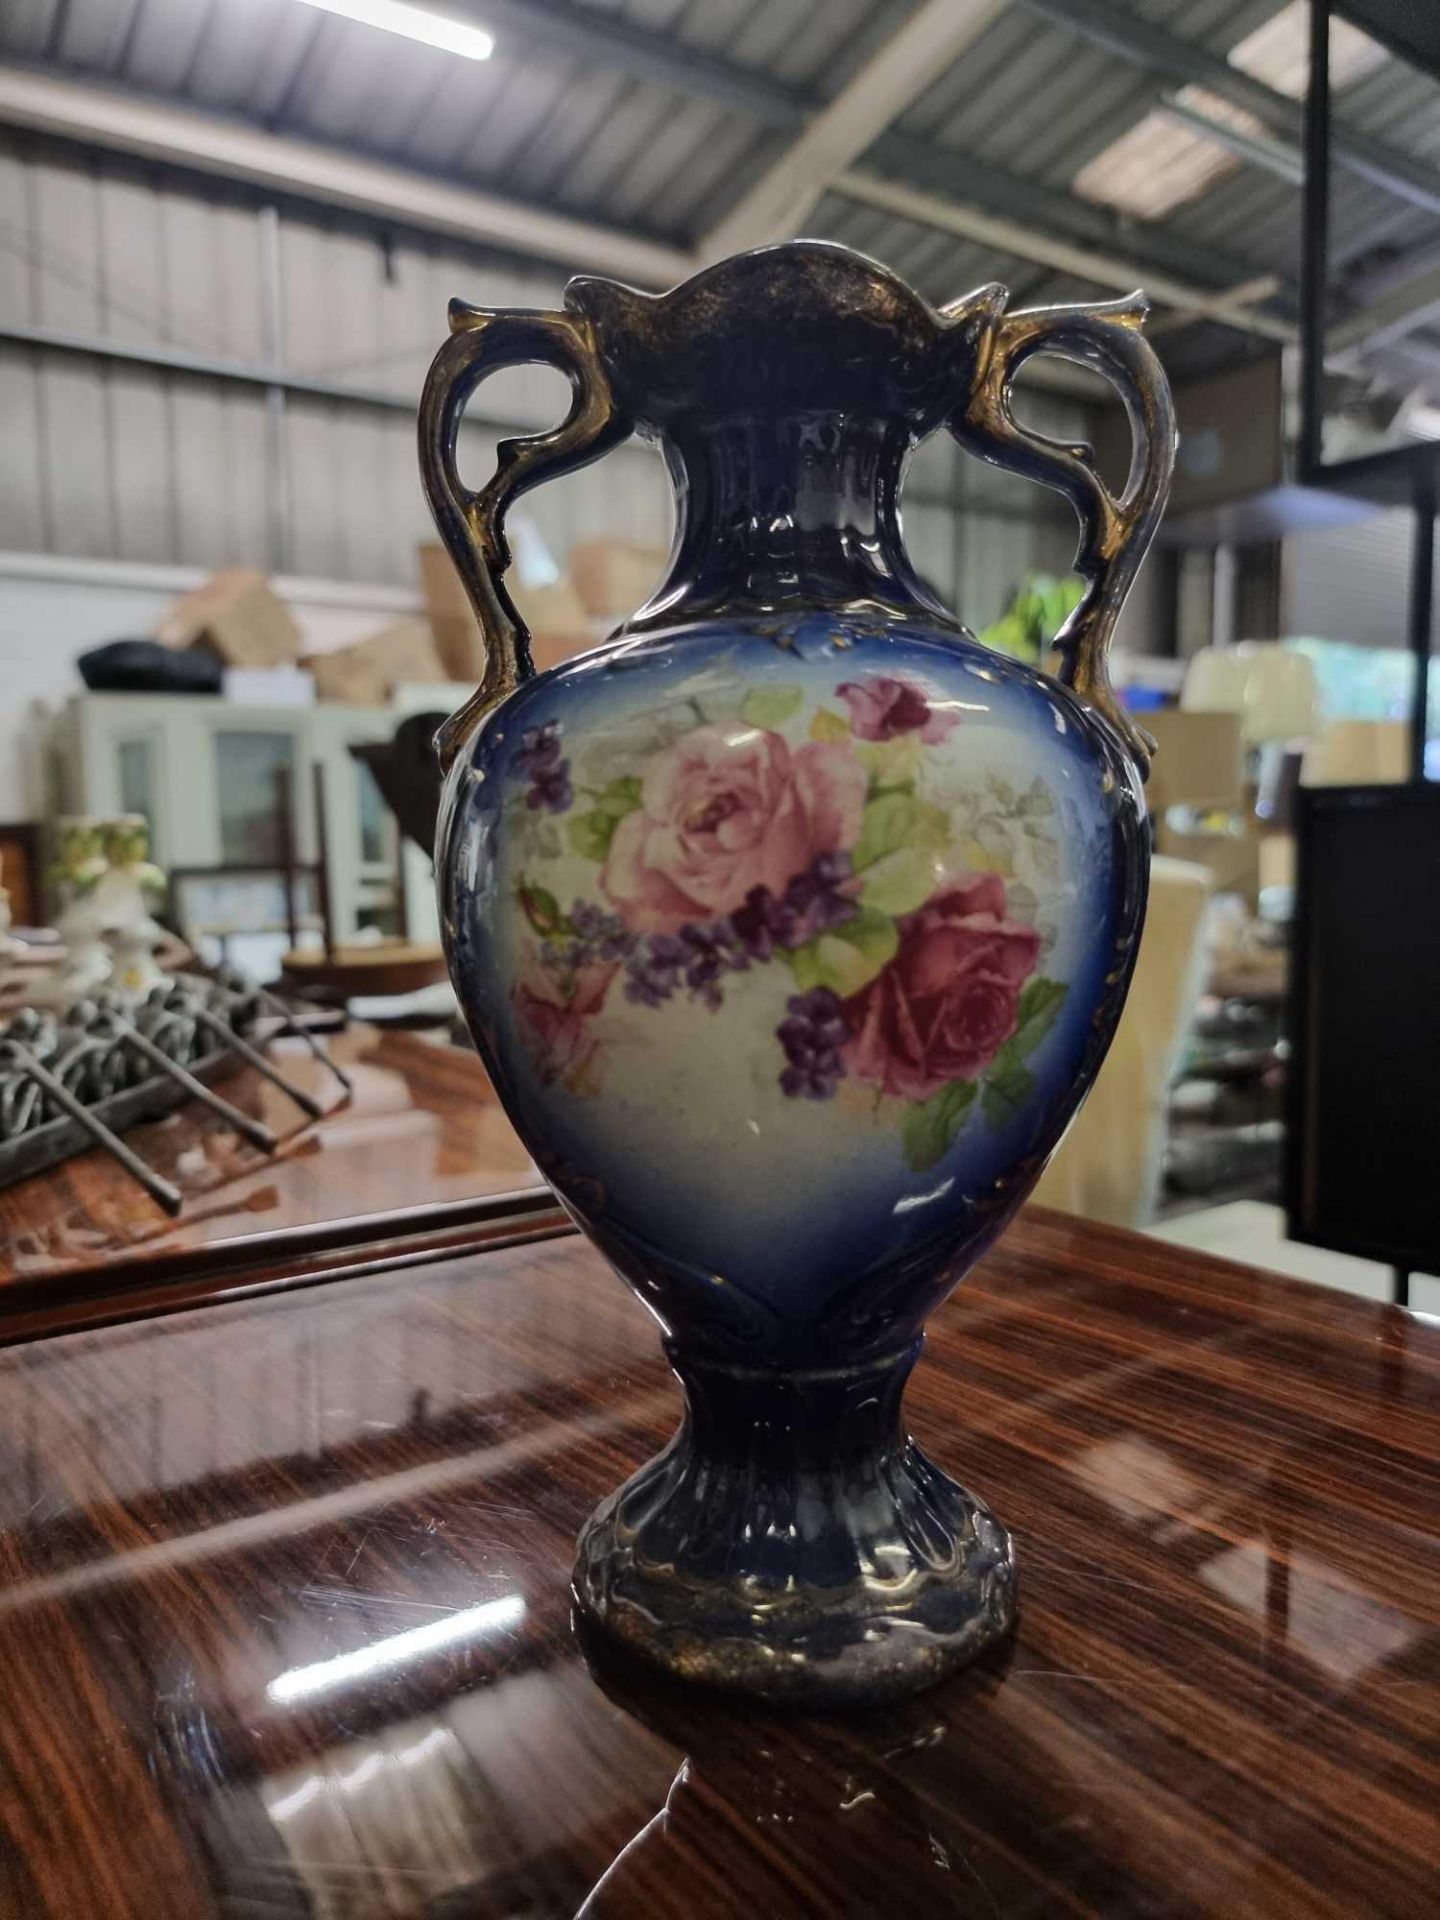 English Roses Hand Painted and Glazed Ceramic Vase 23cm